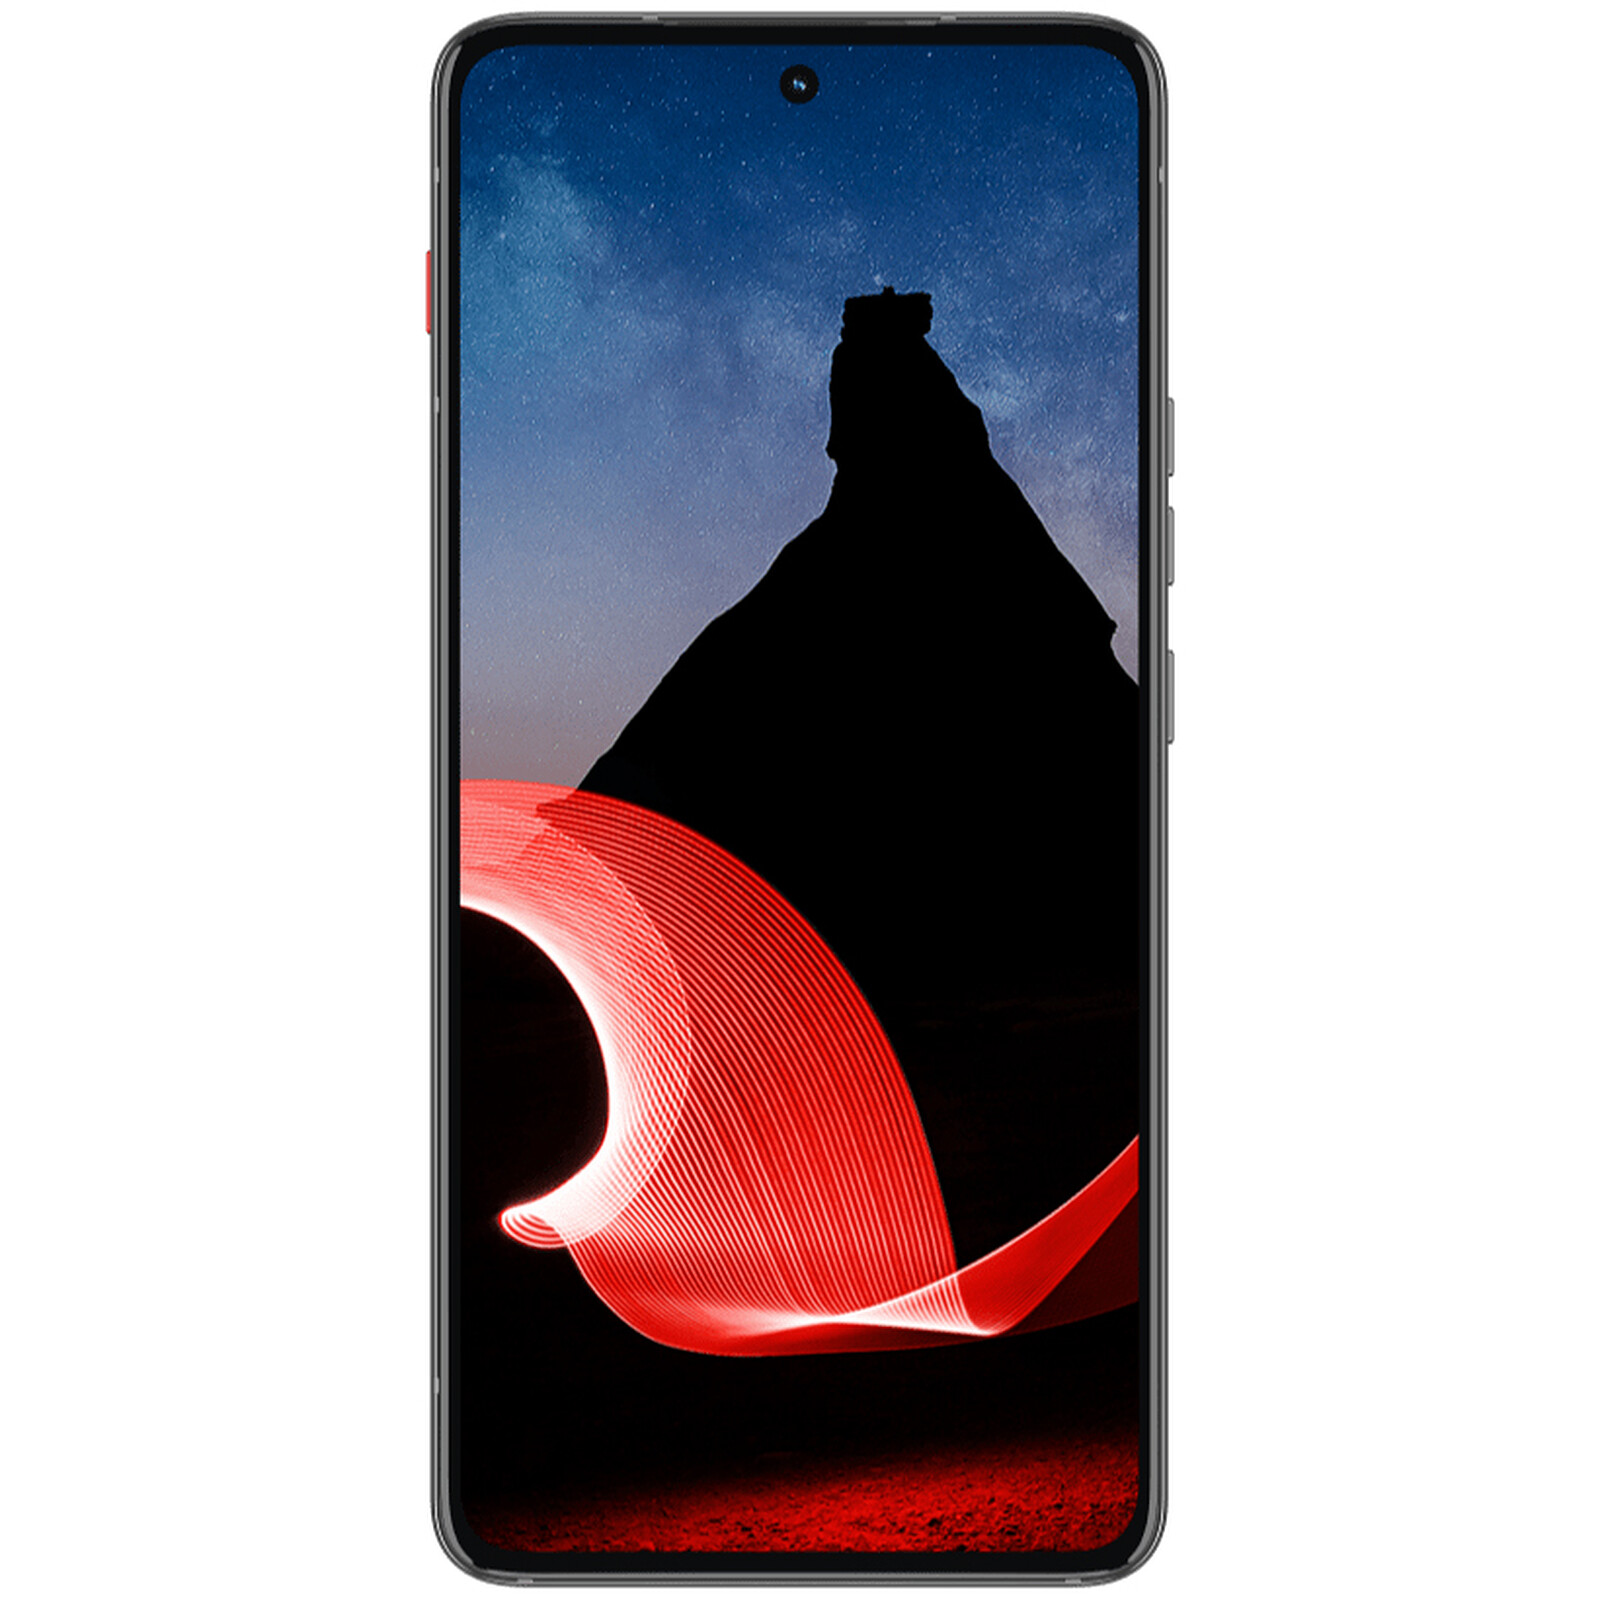 Xiaomi 13 Pro Negro (12GB / 256GB) - Móvil y smartphone - LDLC